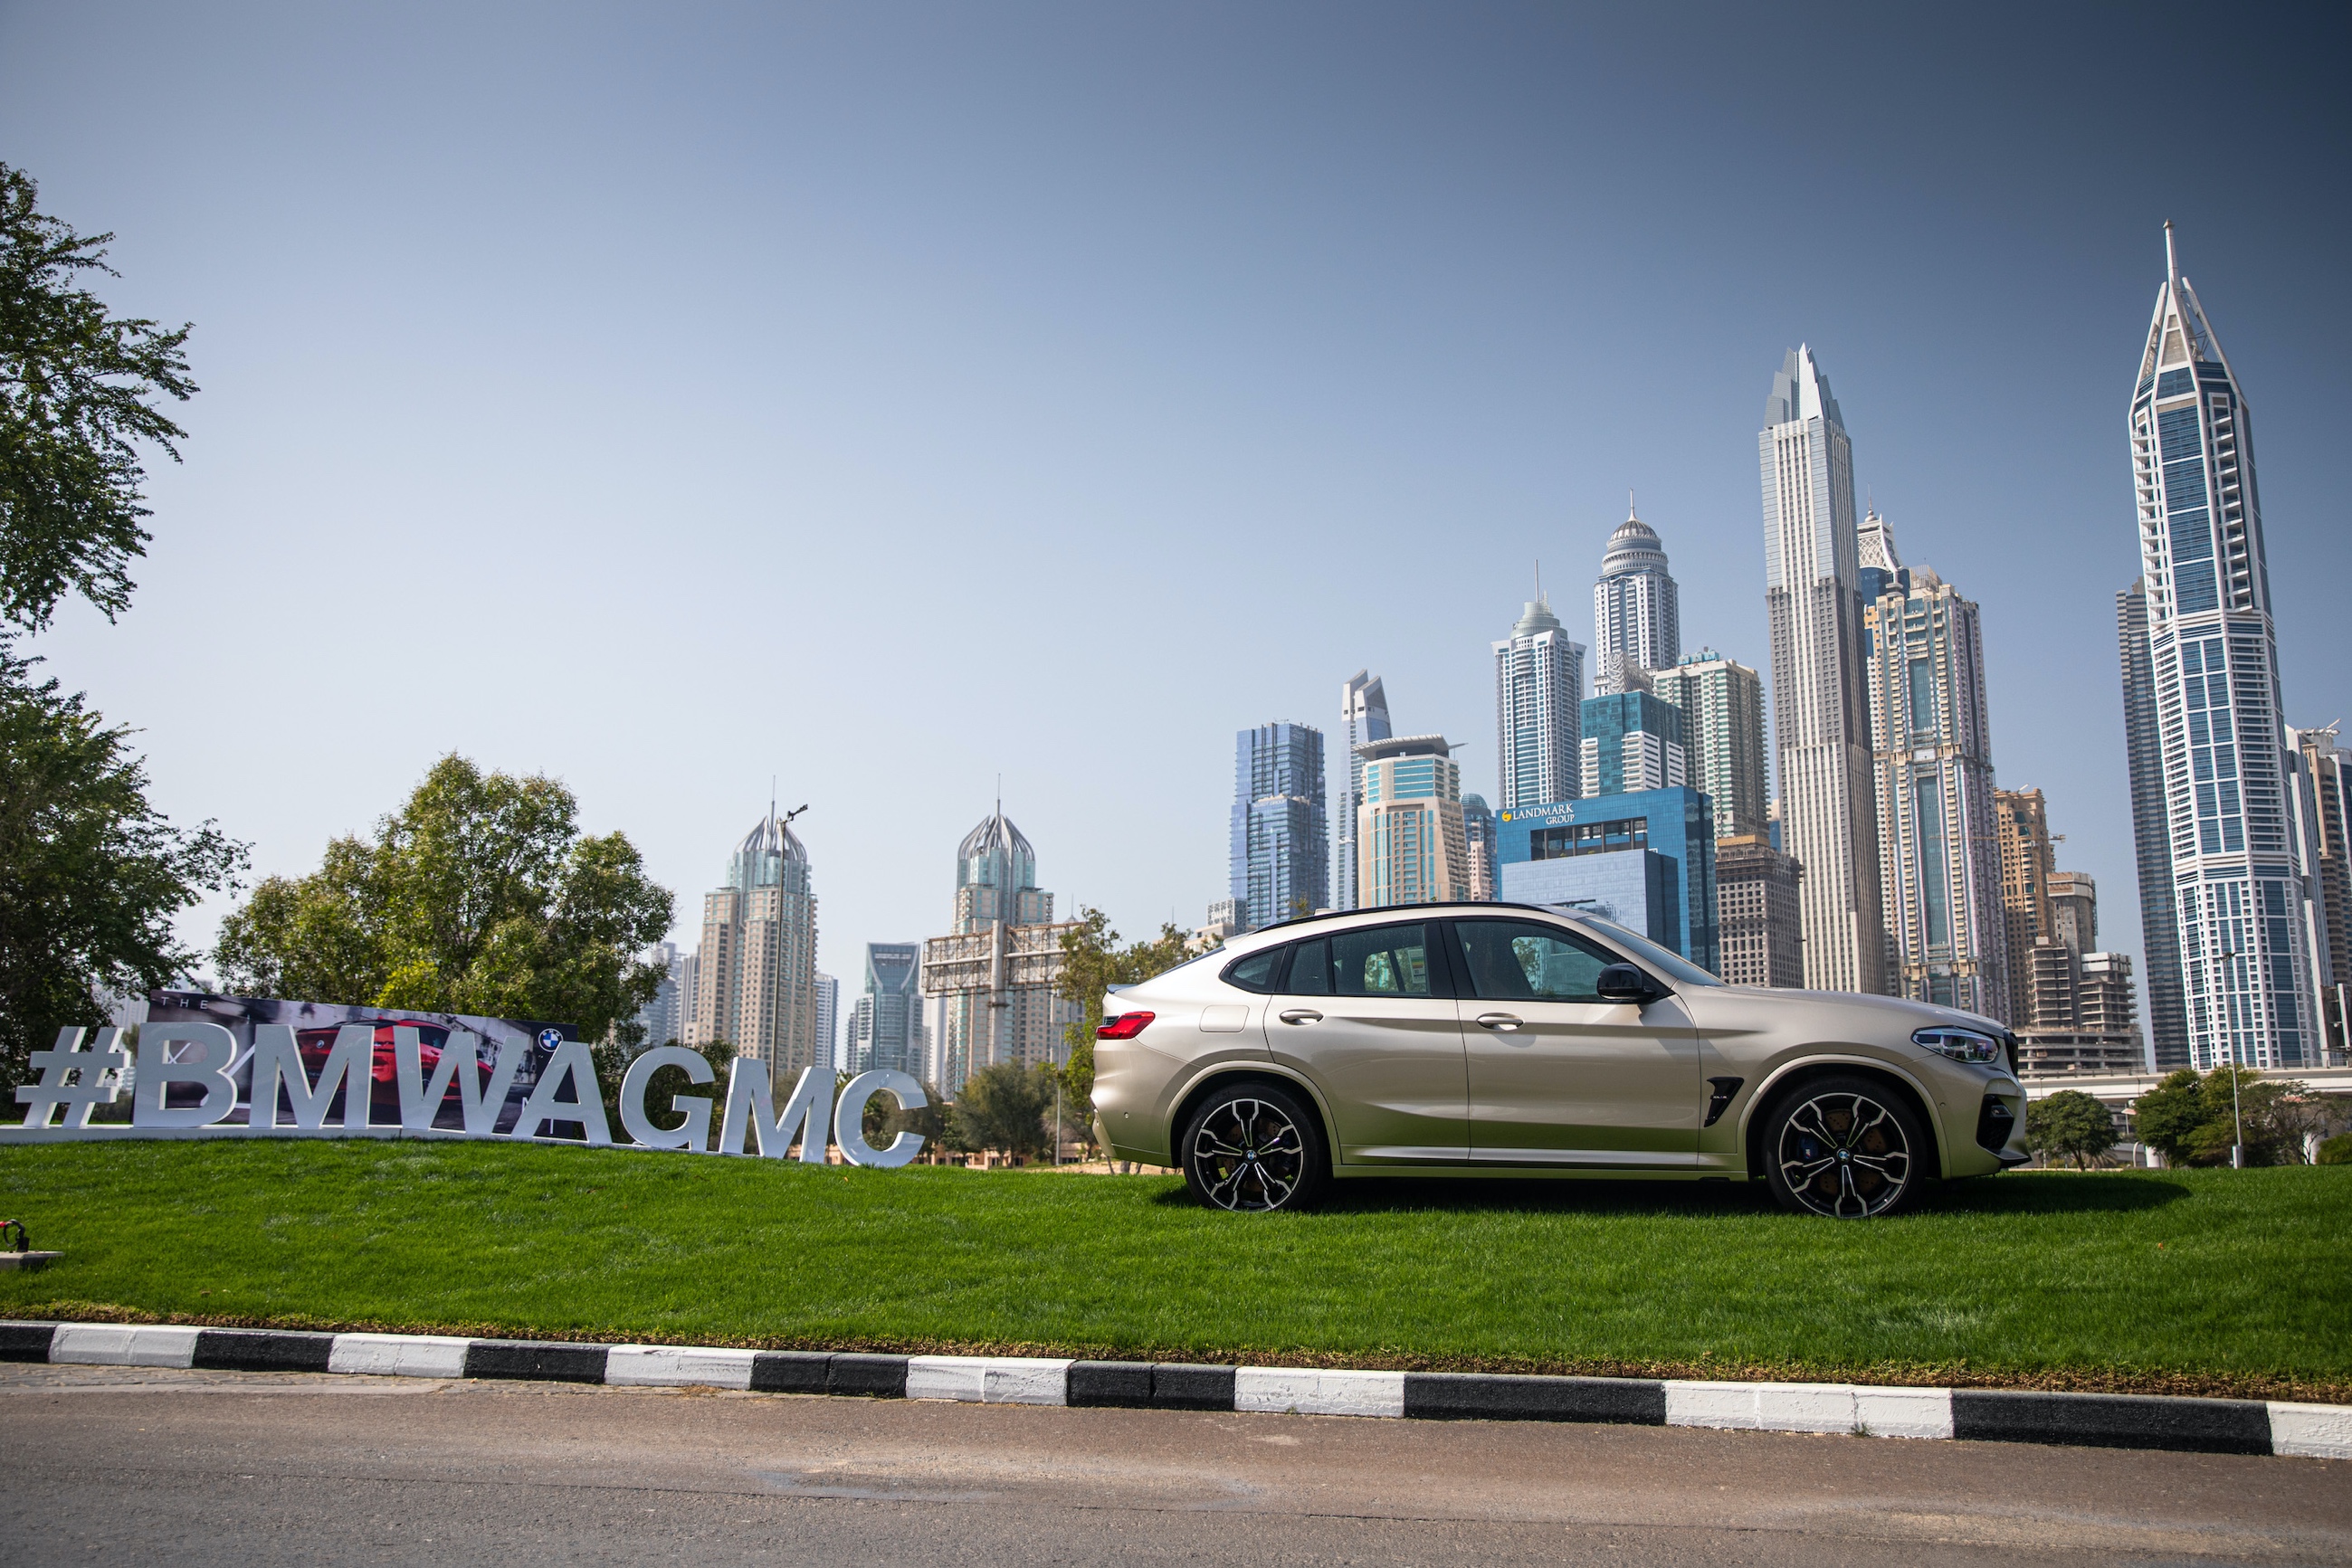 المركز الميكانيكي للخليج العربي يعلن مجددًا أنه سيكون شريك السيارات الرسمي لبطولة أوميغا دبي ديزرت كلاسيك